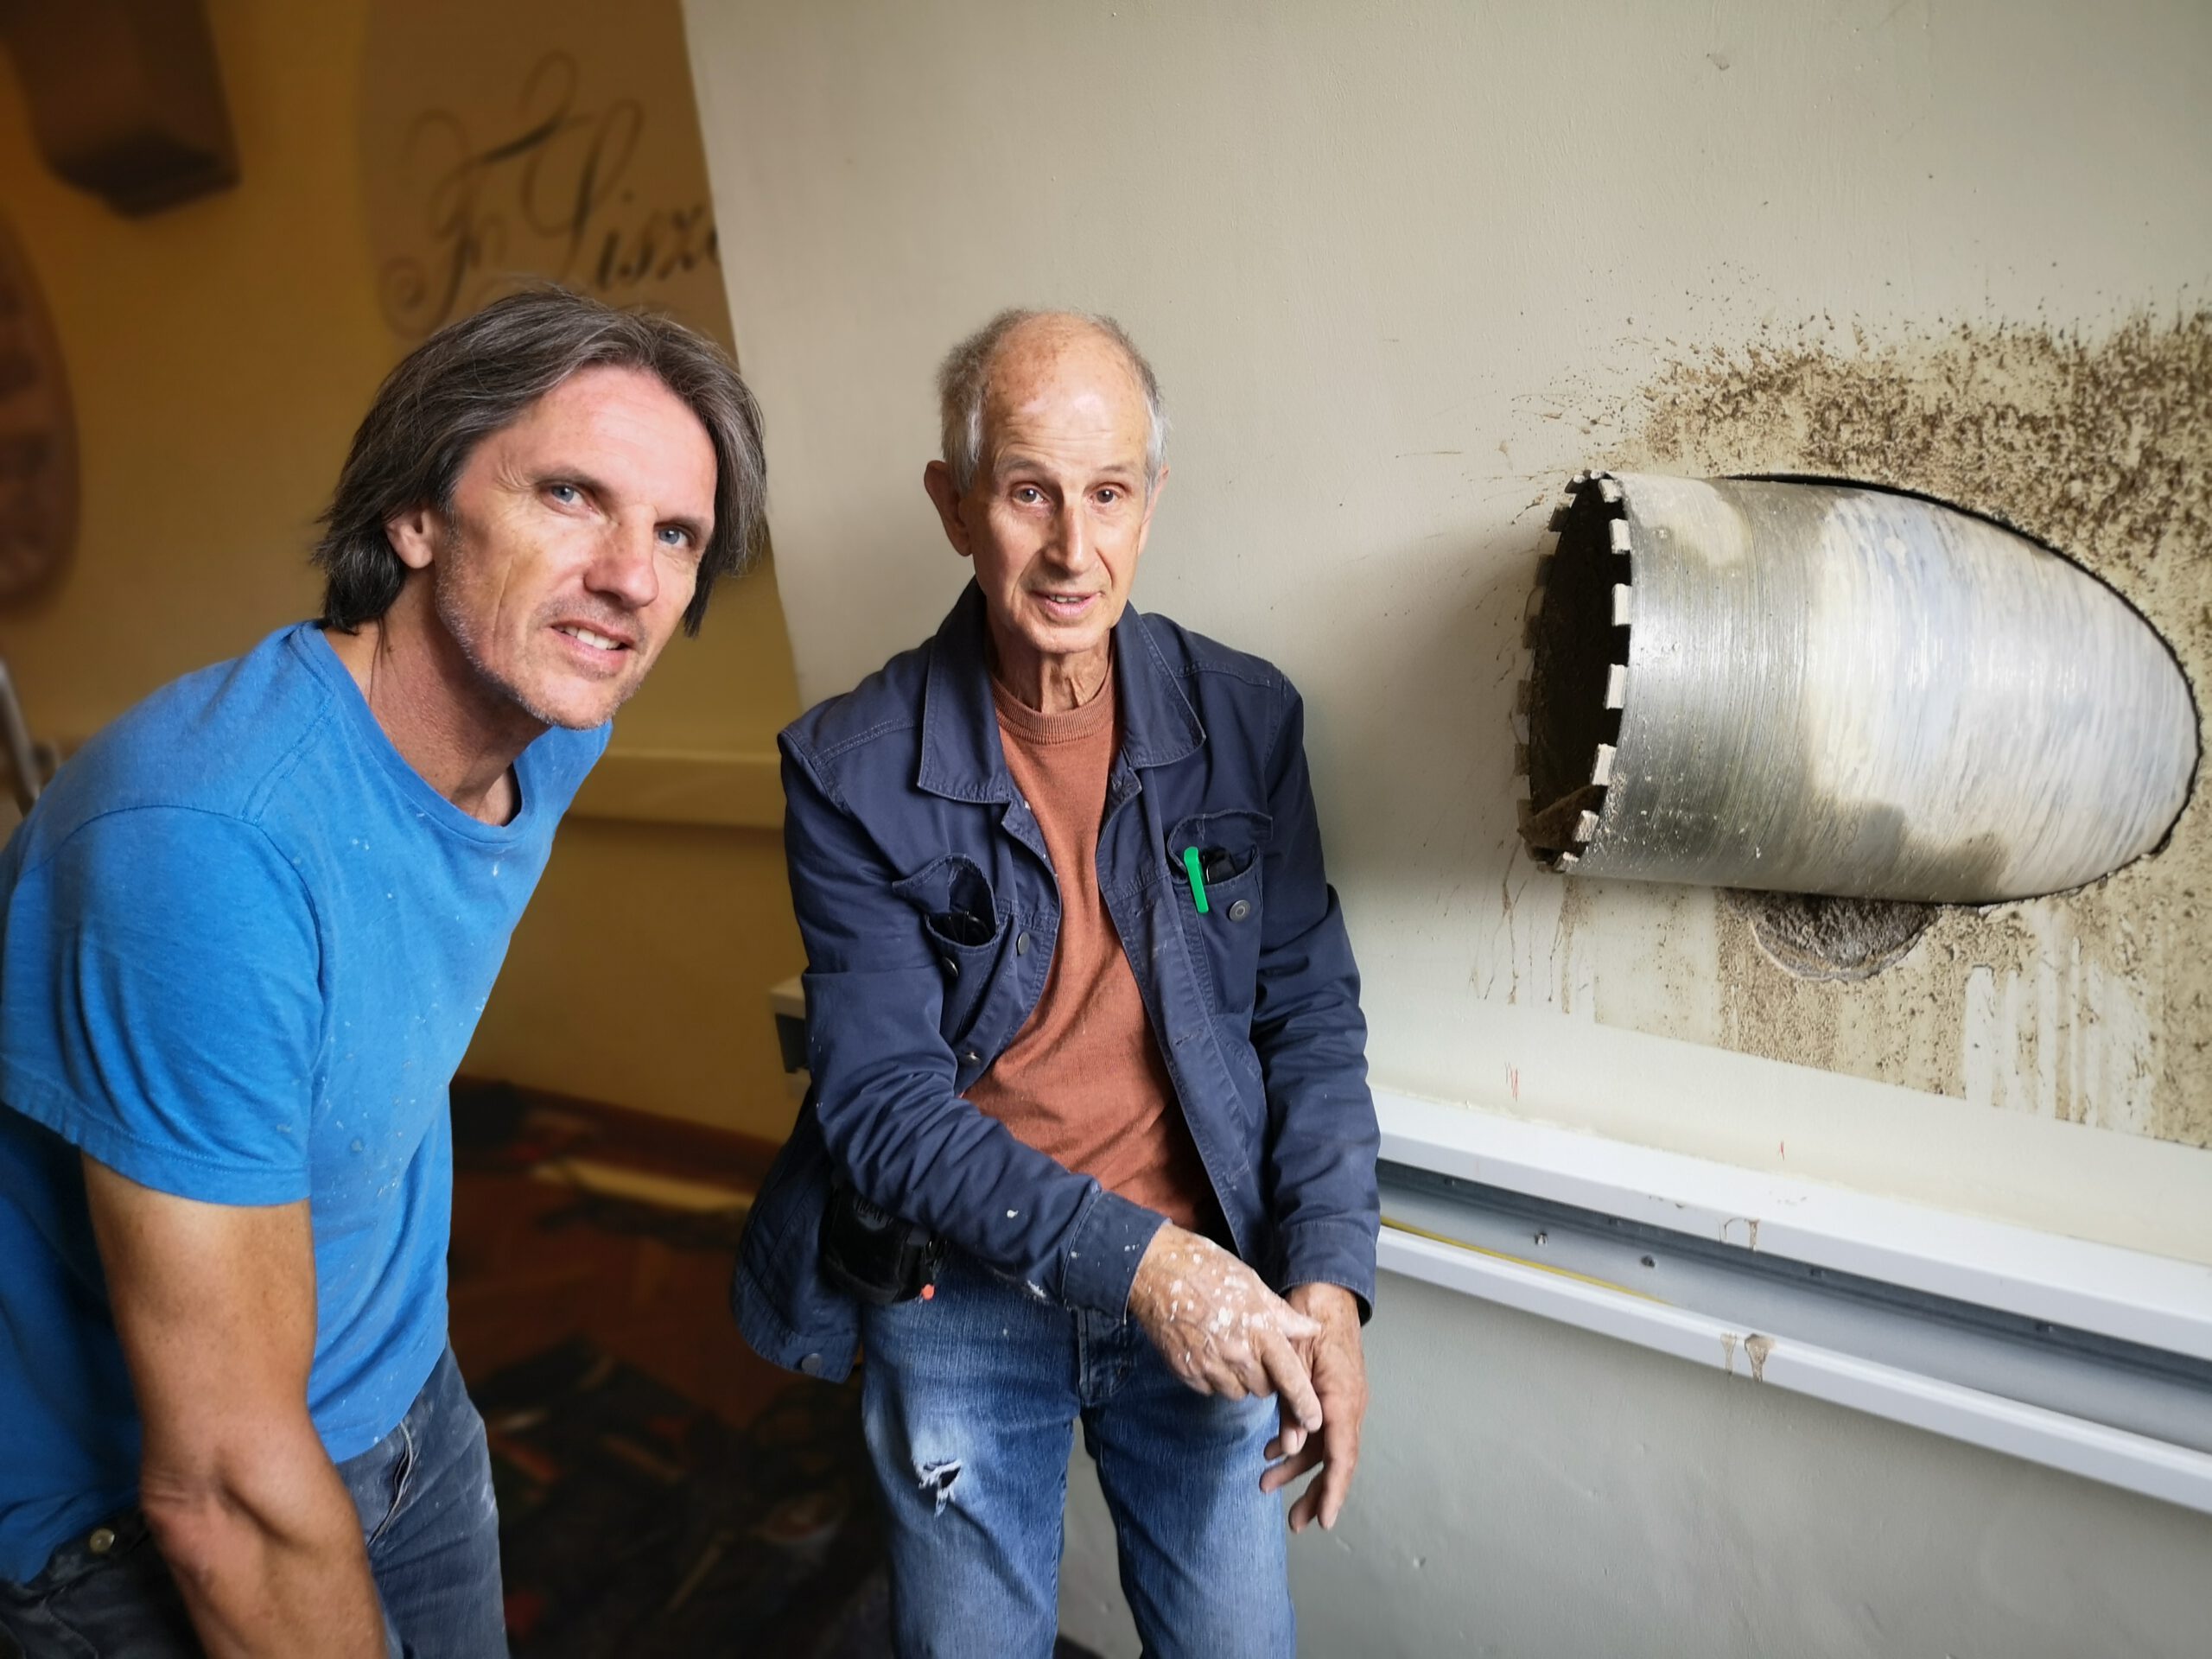 Der Mann links ist Andreas Knitz. Er hat halblange Haare und trägt ein blaues T-Shirt. Der Mann in der Mitte ist Horst Hoheisel. Er hat kurze Haare. Andreas und Horst stehen neben einem Rohr. Das Rohr kommt aus einer Wand. Es ist Teil von einem Kunstwerk. Das Foto ist in Farbe.